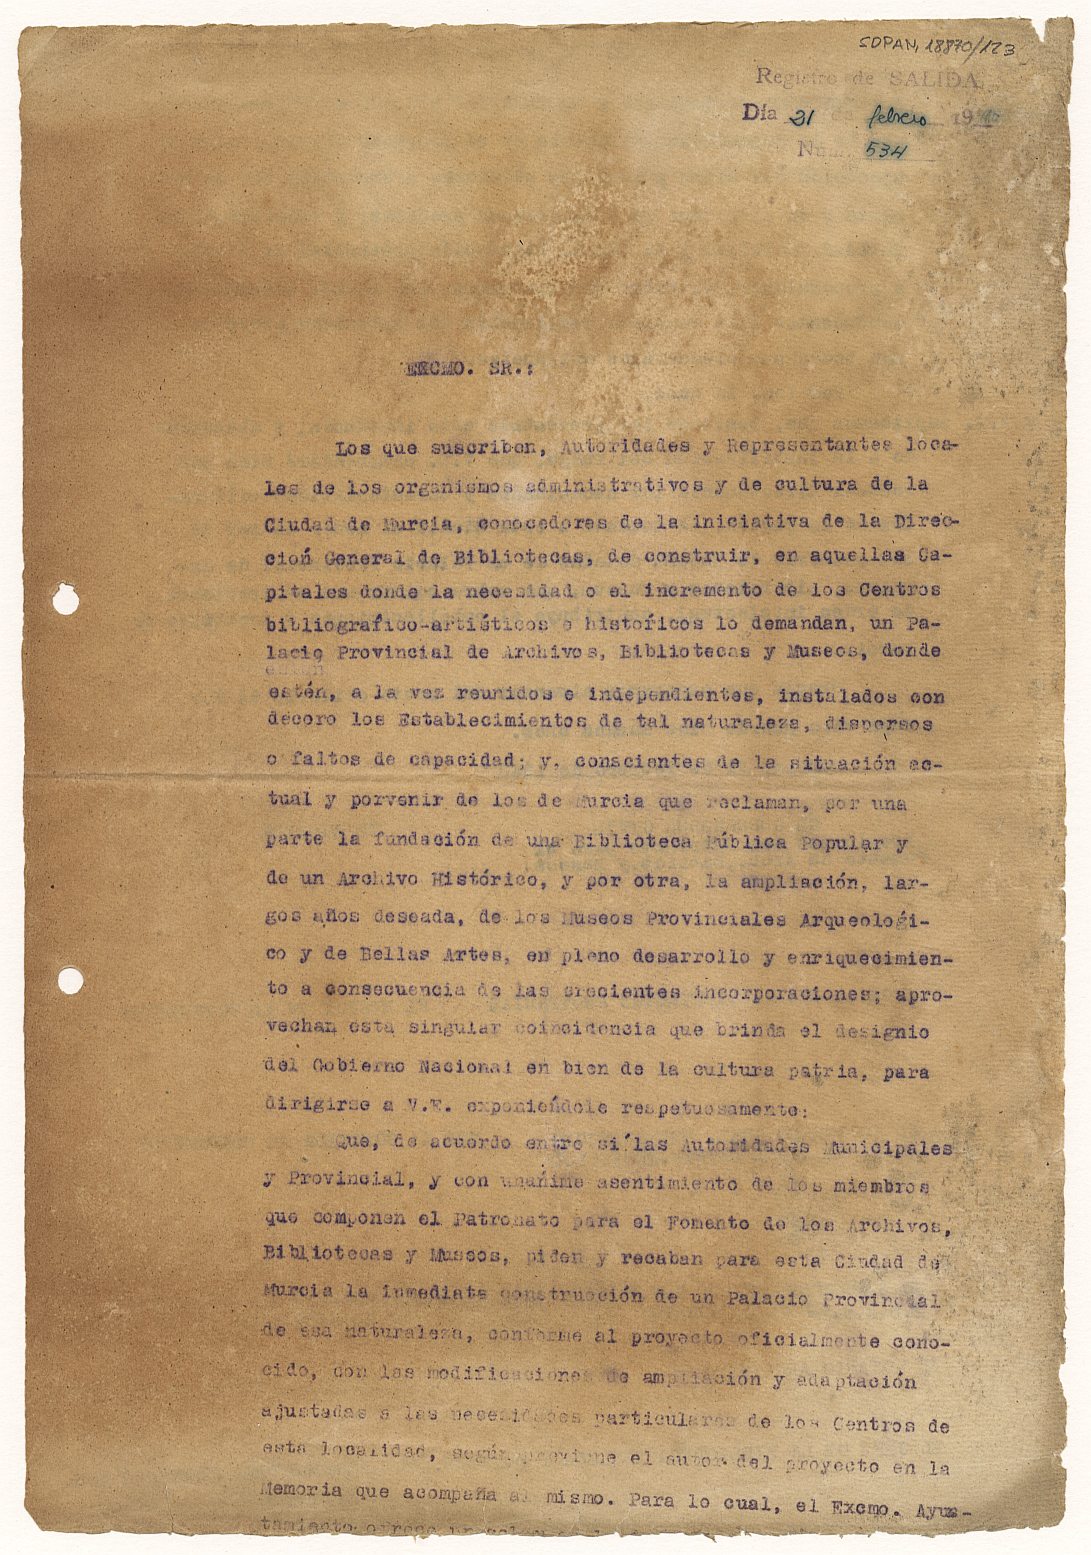 Minuta del oficio enviado al Ministerio de Educación Nacional exponiéndole la necesidad de la construcción en Murcia de un Palacio Provincial de Archivos, Bibliotecas y Museos.